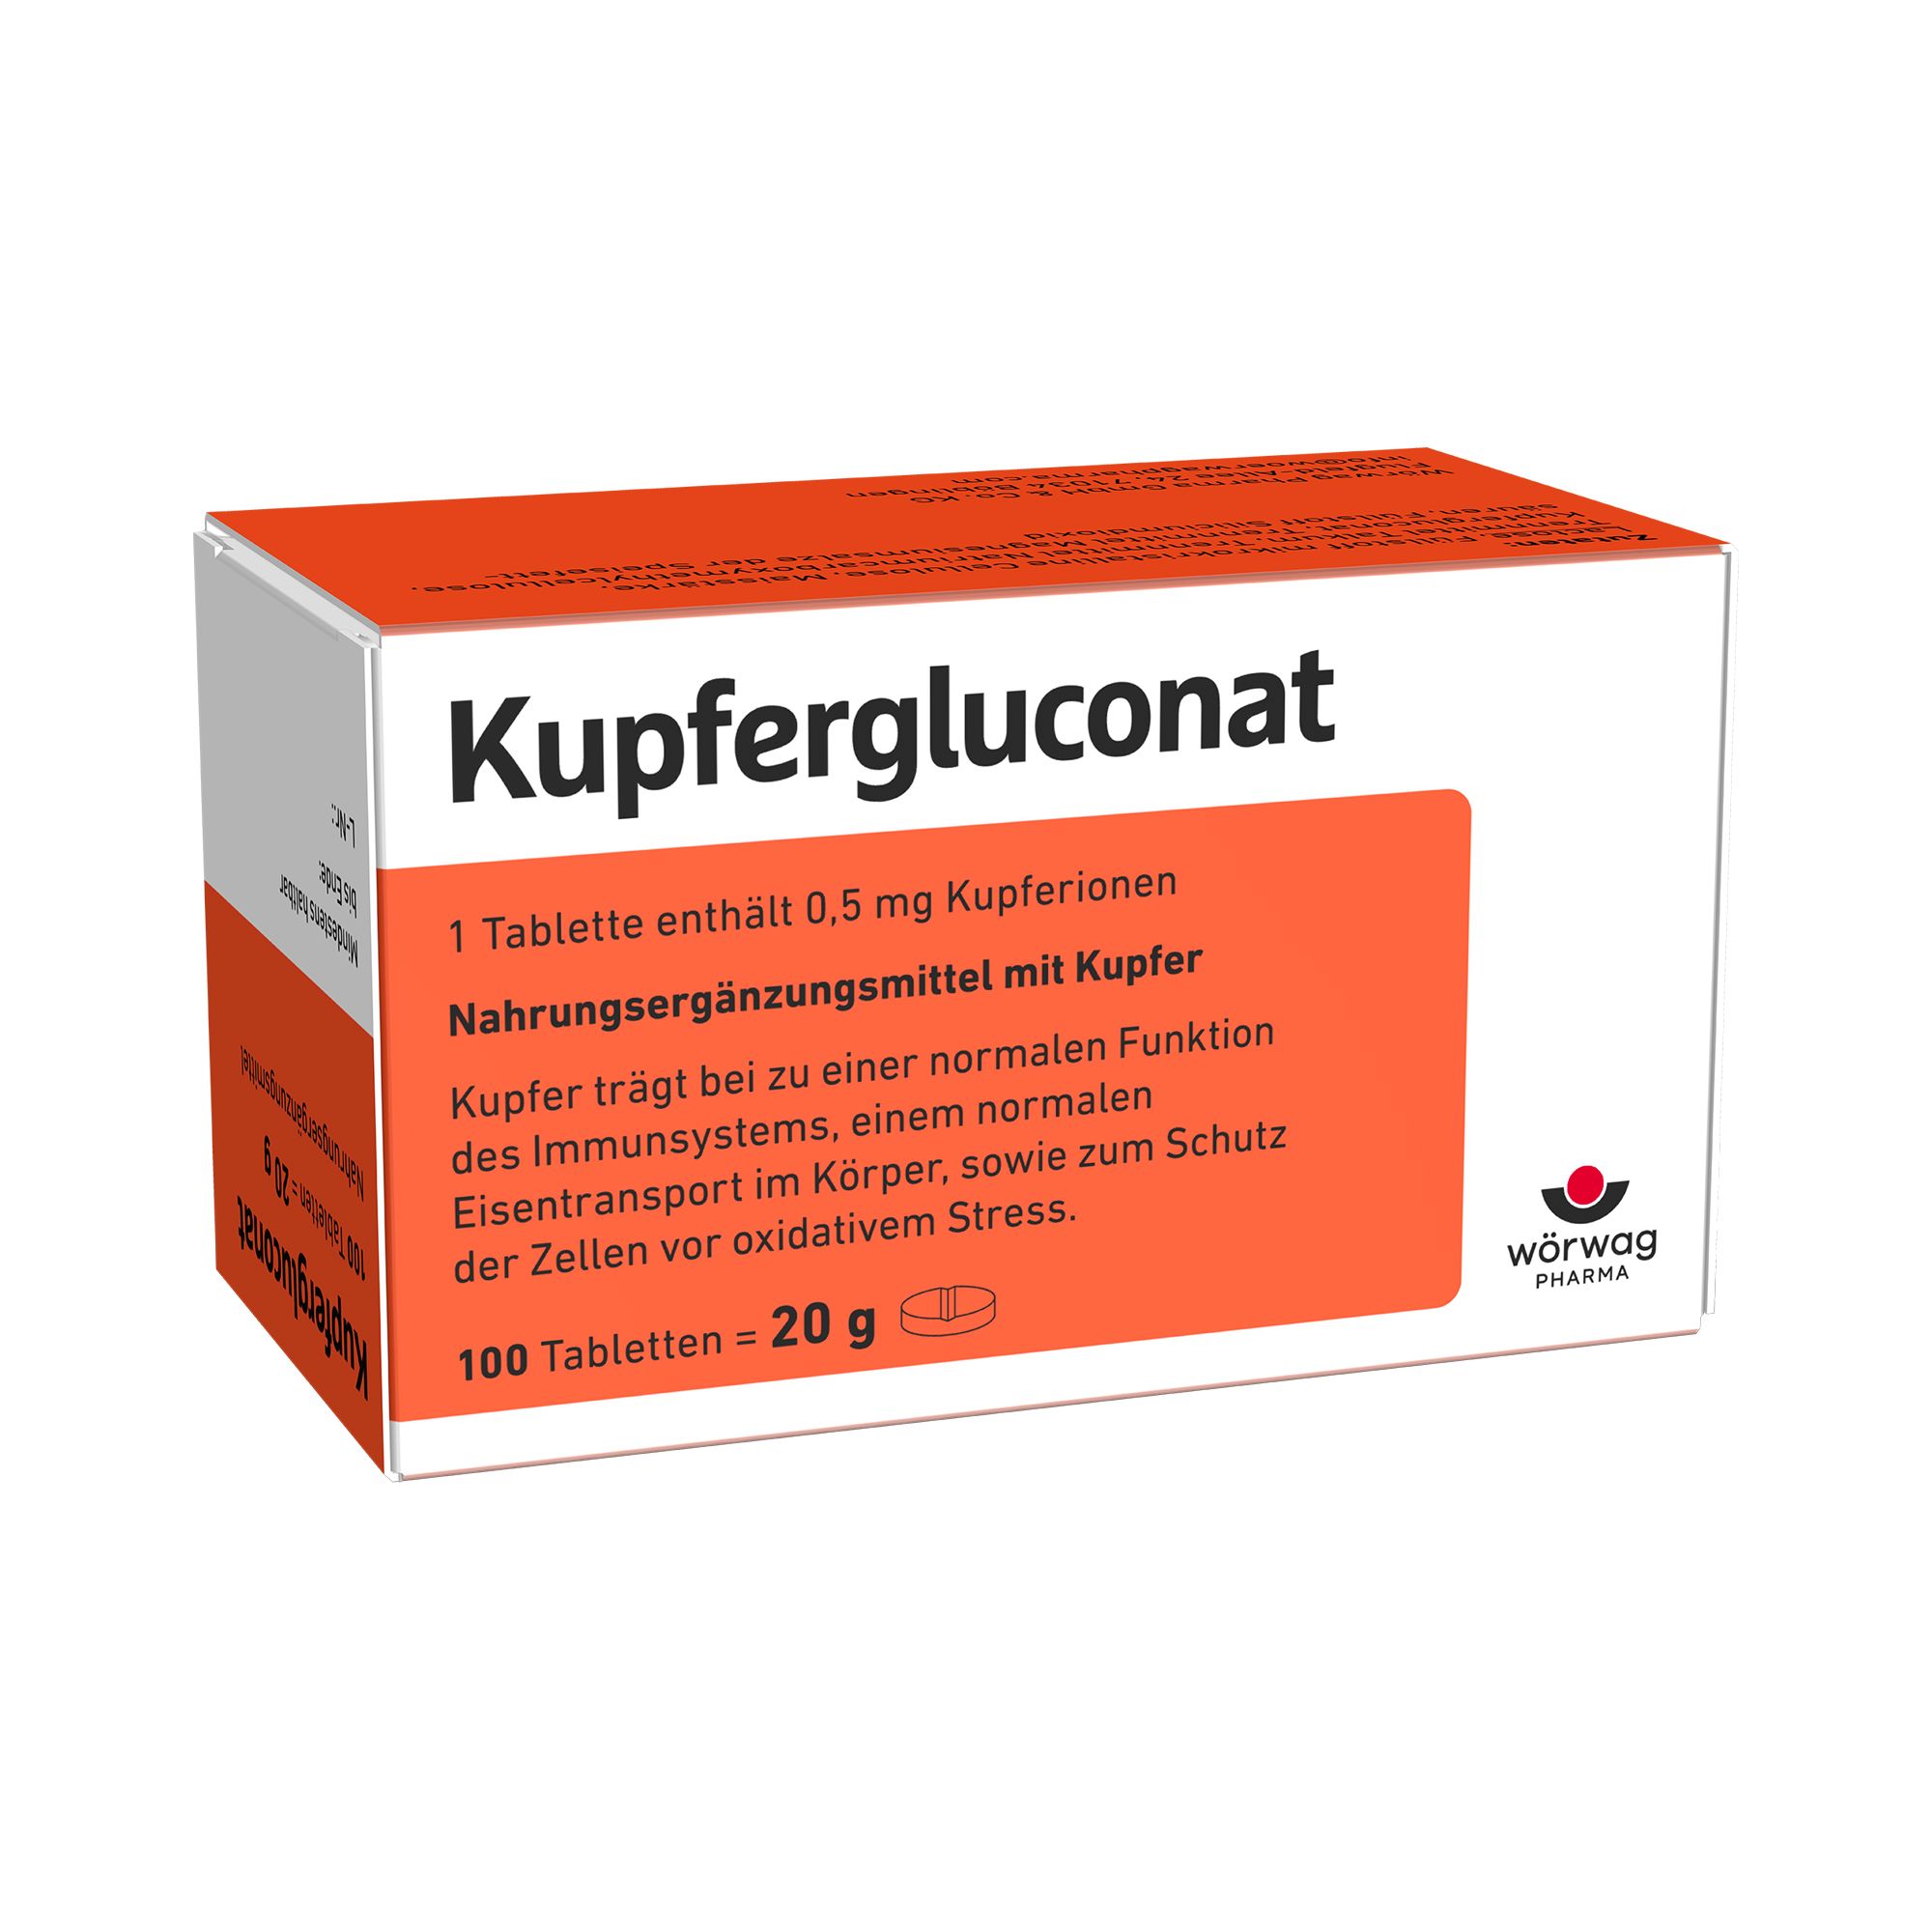 Image of Kupfergluconat